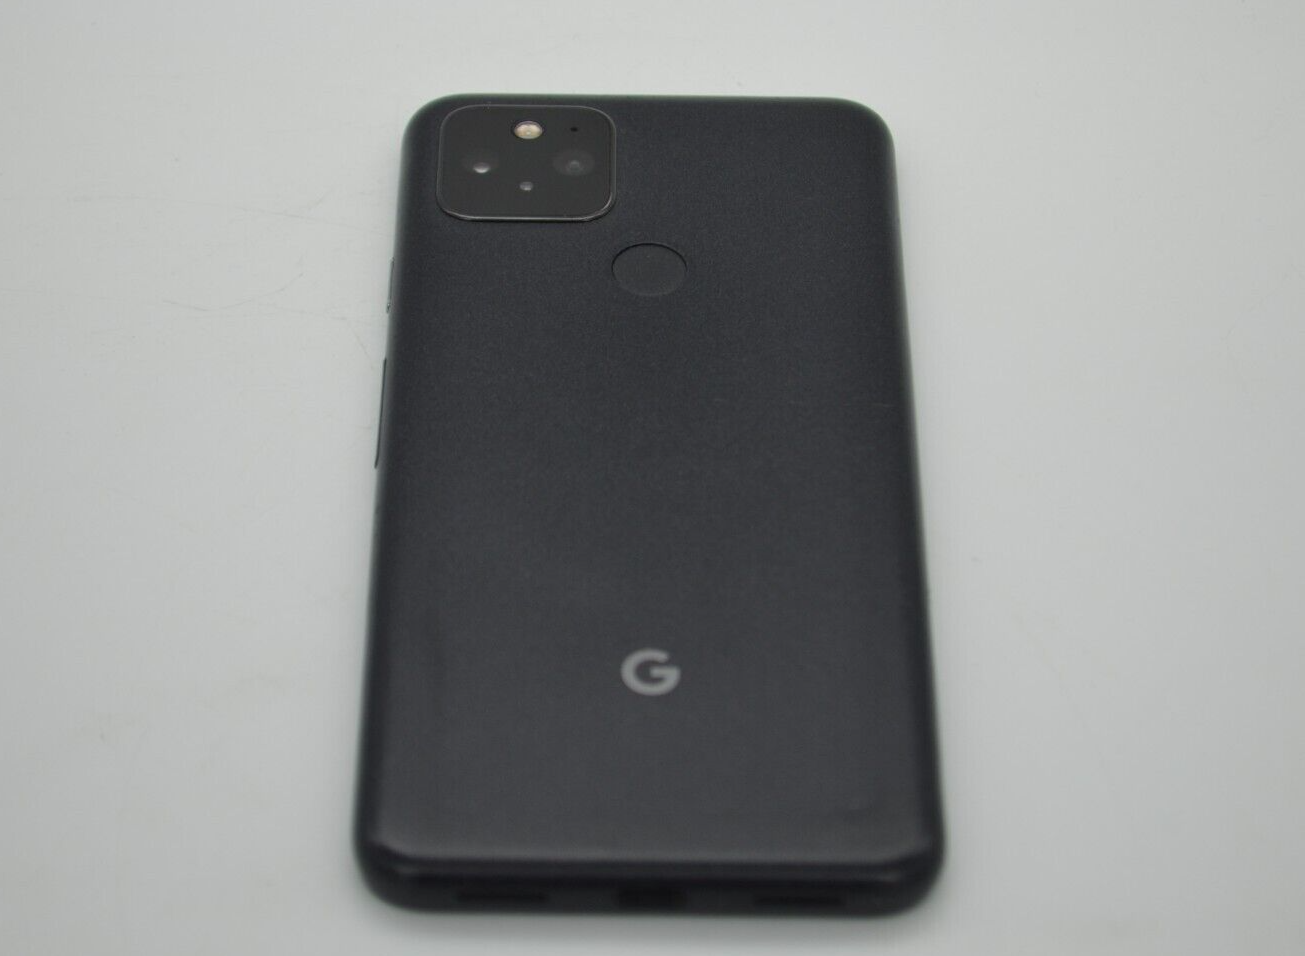 Google Pixel 5 GD1YQ - 128GB - Just Black (Unlocked) (Single SIM 